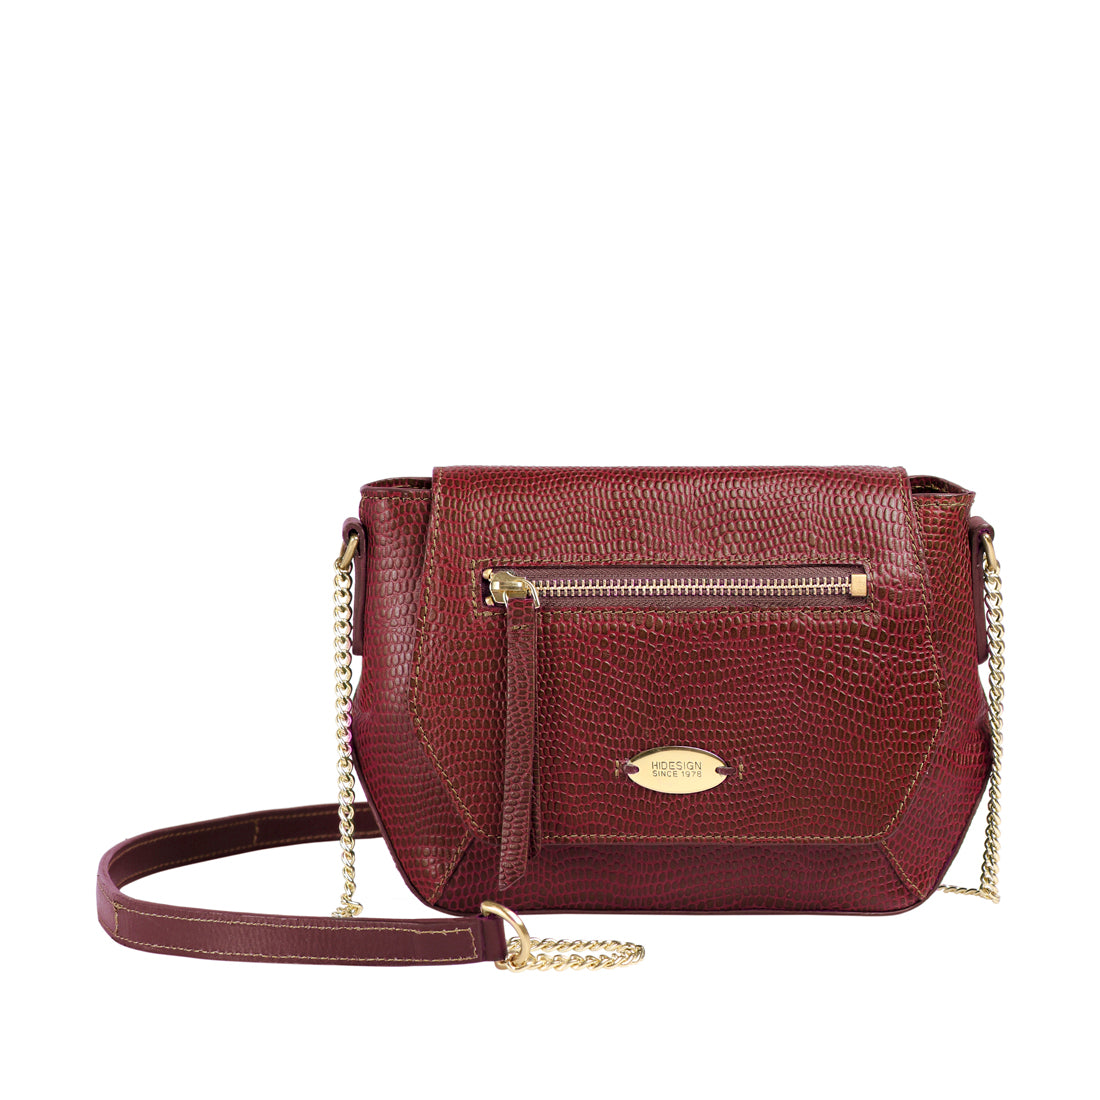 Buy Red Ee Taurus 03 Sling Bag Online - Hidesign